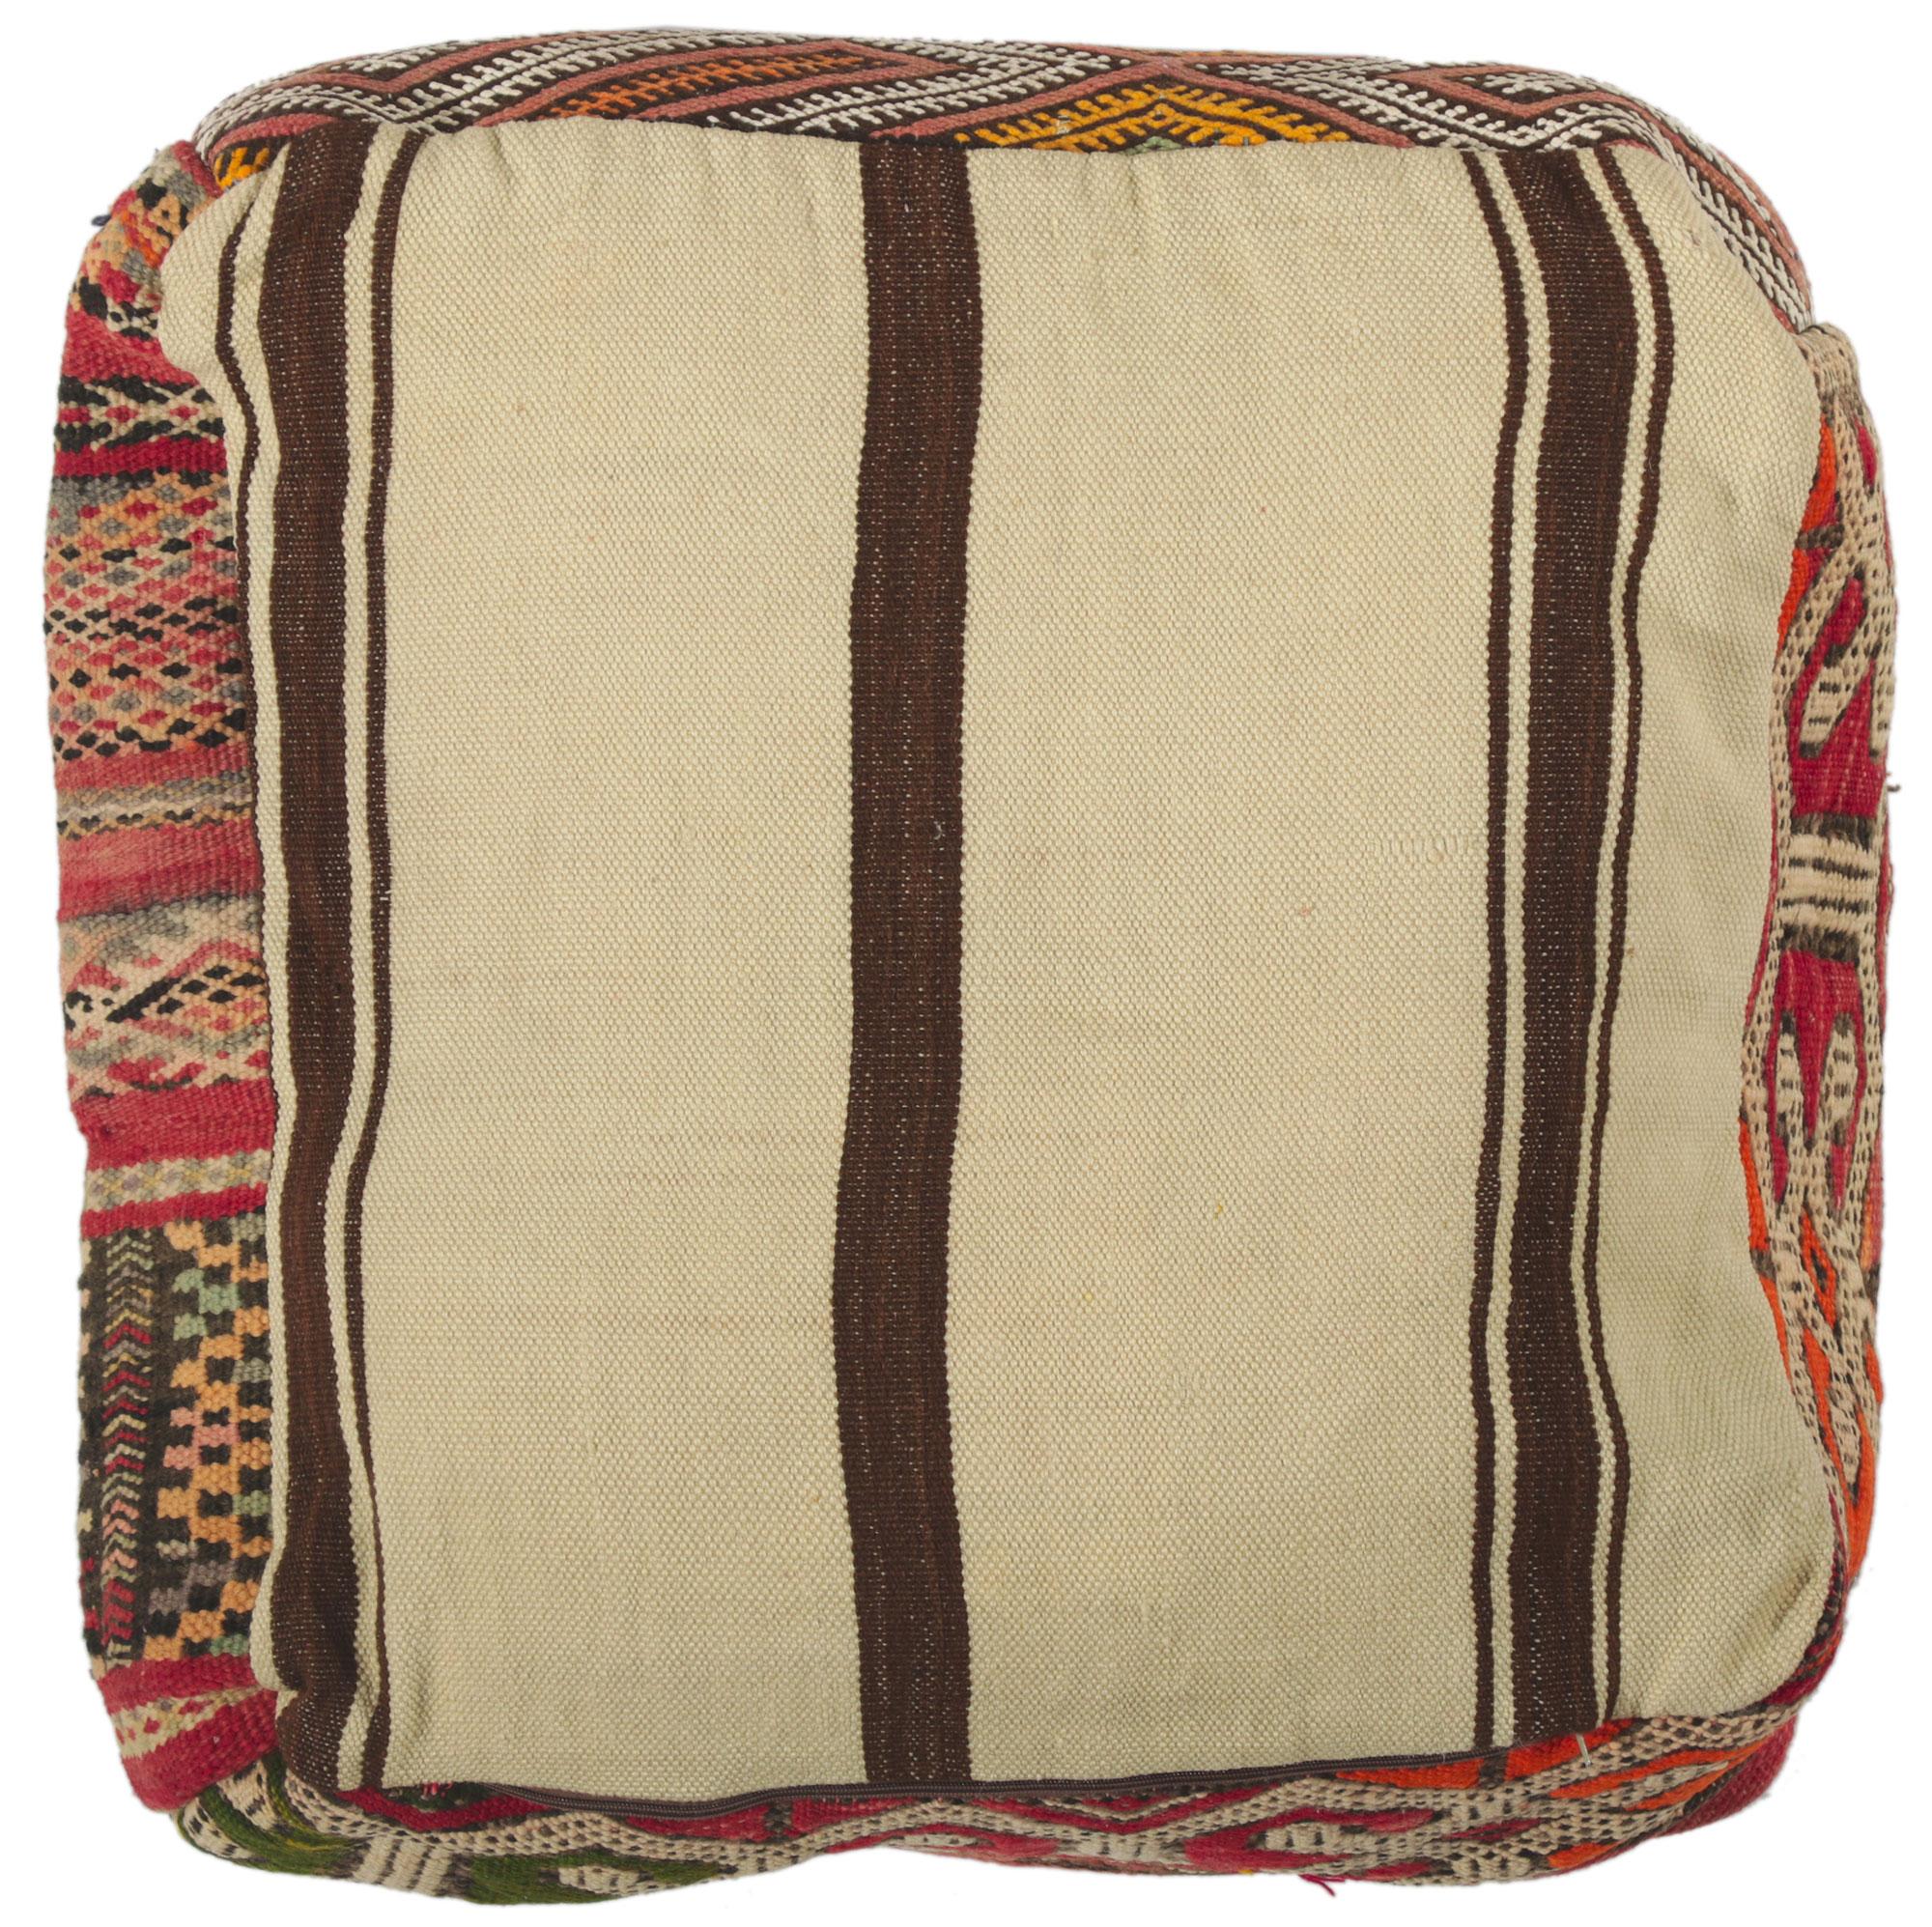 Hand-Woven Vintage Moroccan Kilim Pouf Ottoman